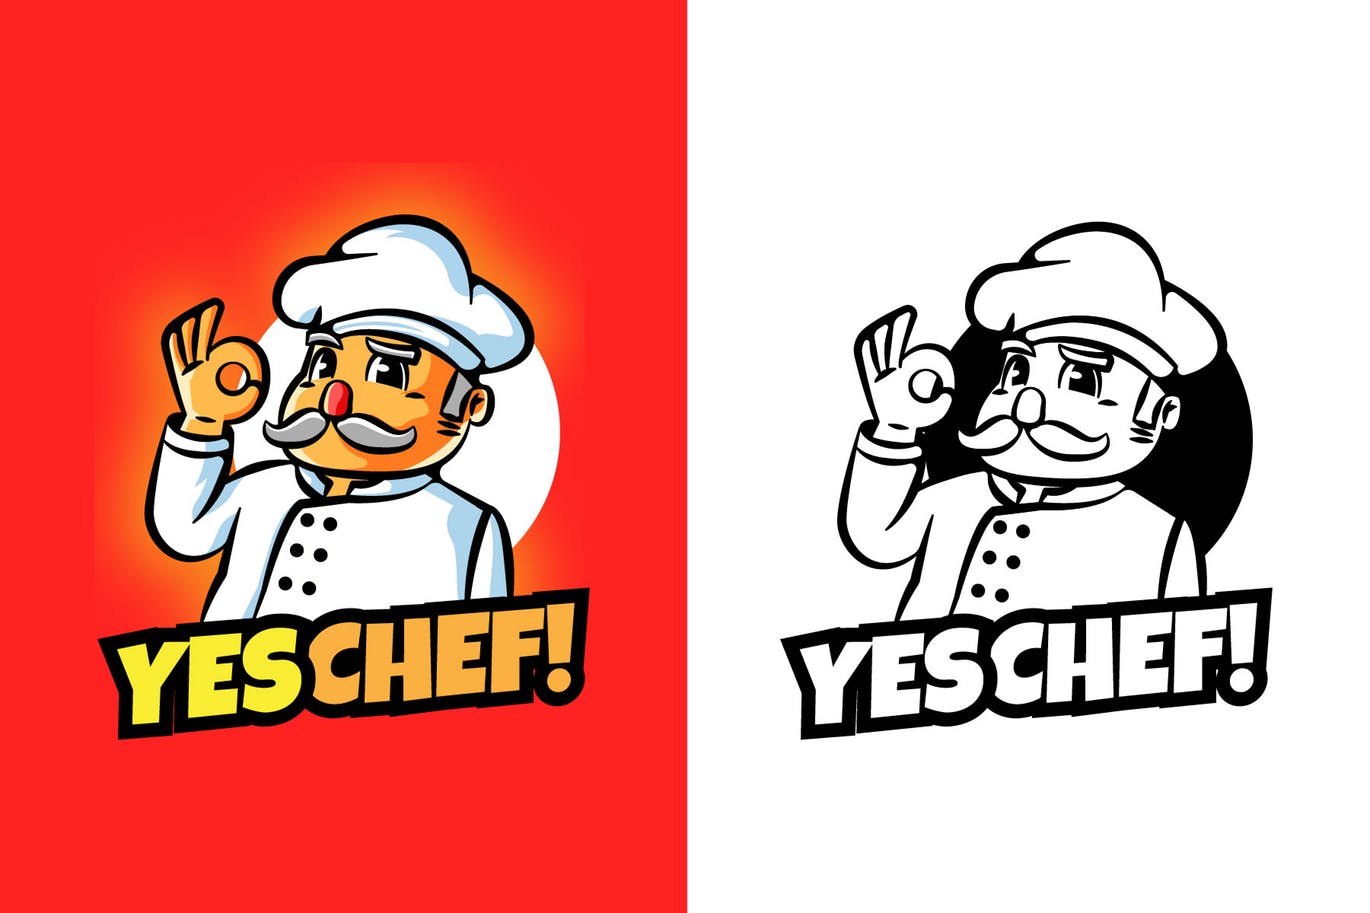 大厨卡通形象餐厅美食品牌Logo设计素材库精选模板 YES CHEF Mascot Logo插图